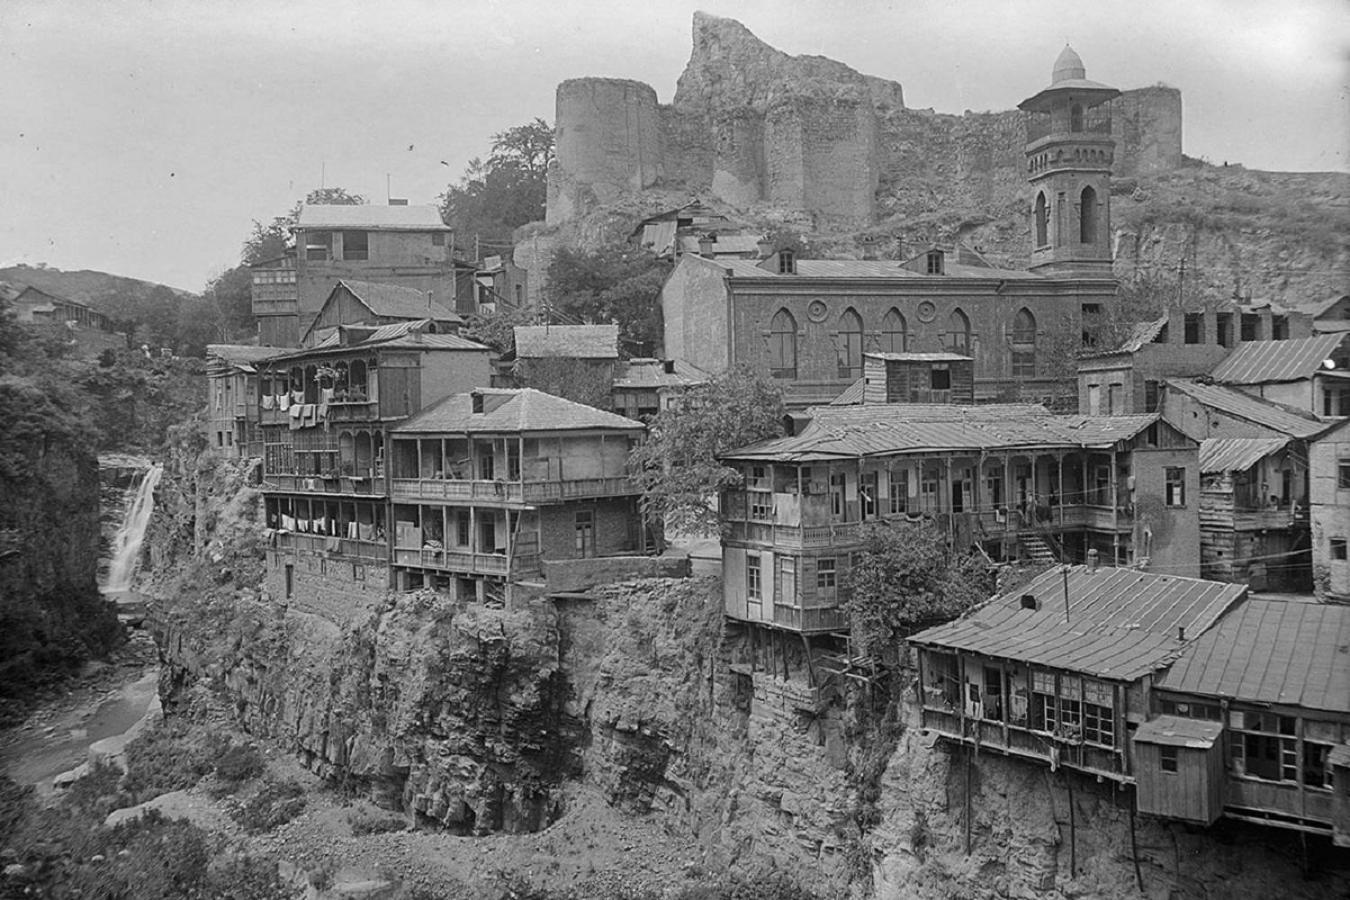 Hotel Khokhobi Old Tbilisi Exterior photo